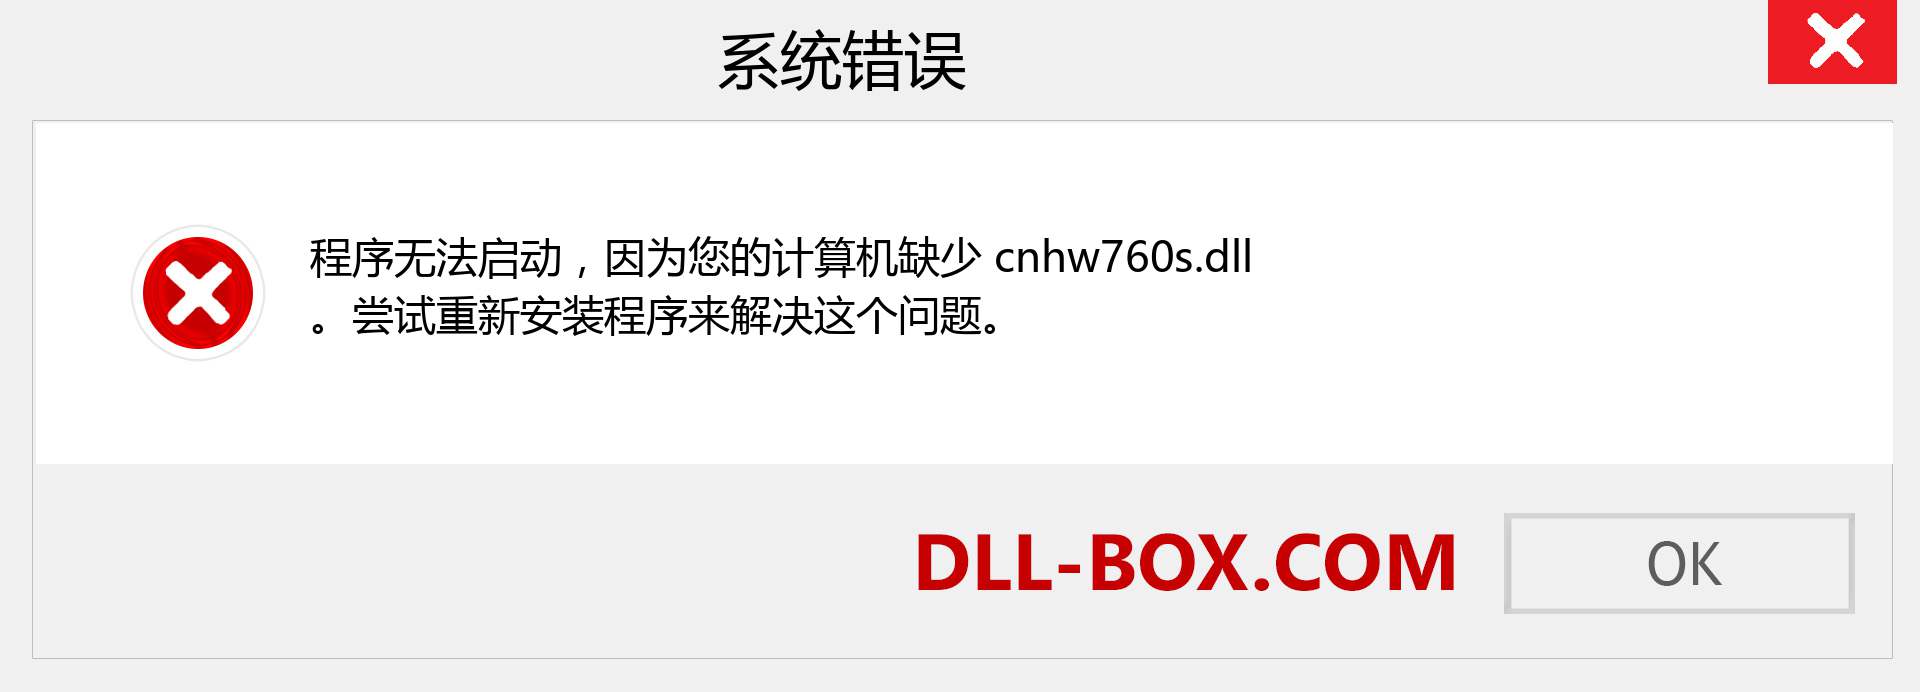 cnhw760s.dll 文件丢失？。 适用于 Windows 7、8、10 的下载 - 修复 Windows、照片、图像上的 cnhw760s dll 丢失错误